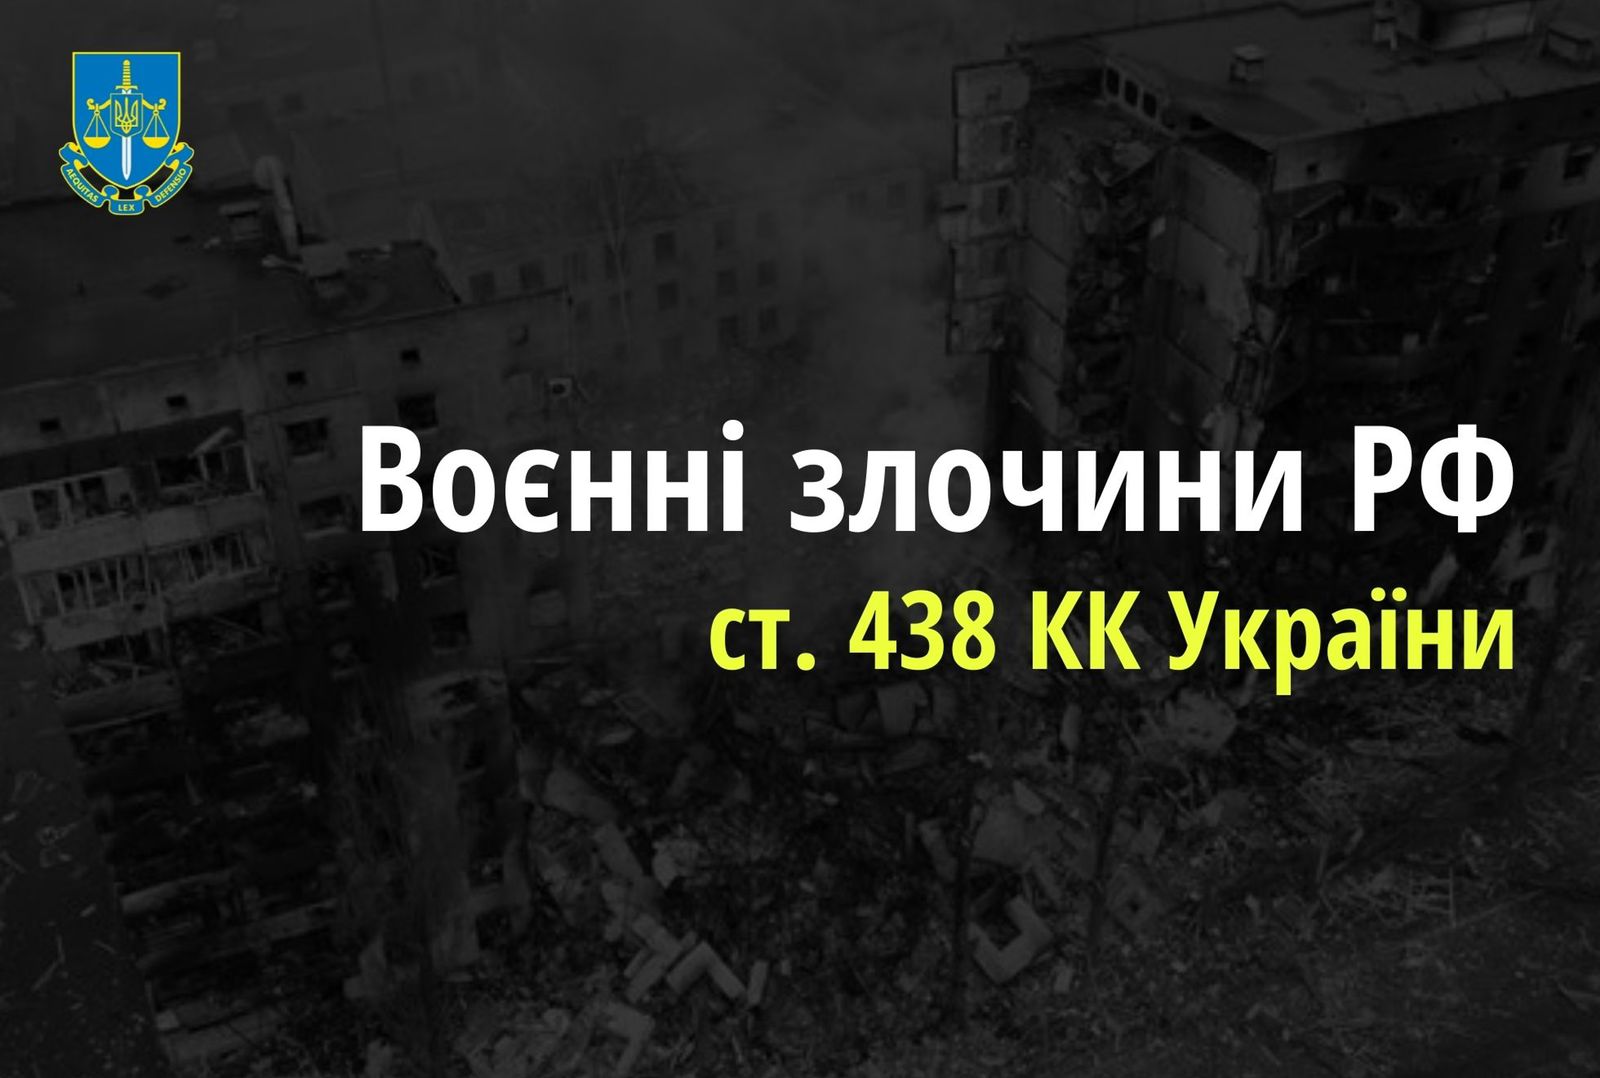 Обстріли військовими РФ населених пунктів на Луганщині – розпочато провадження